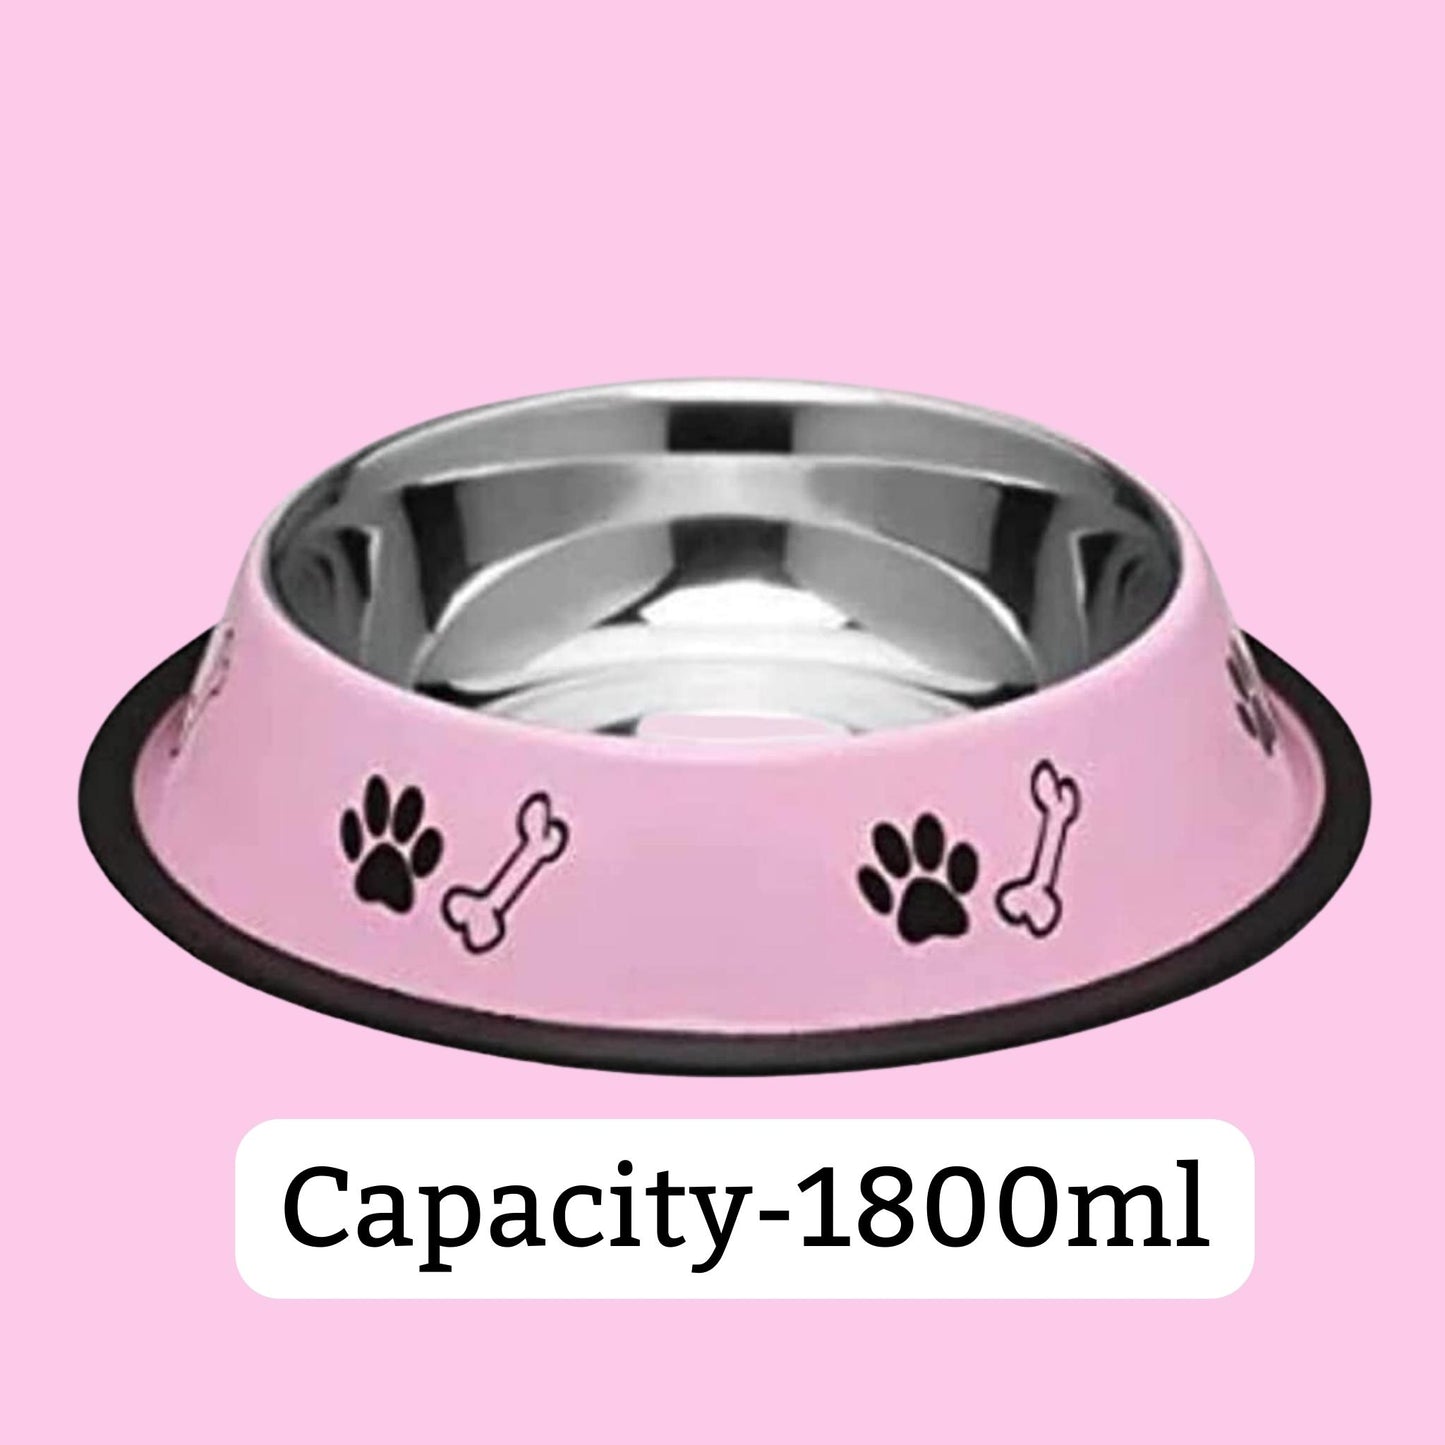 Foodie Puppies Printed Steel Bowl for Pets - 1800ml (Pink)